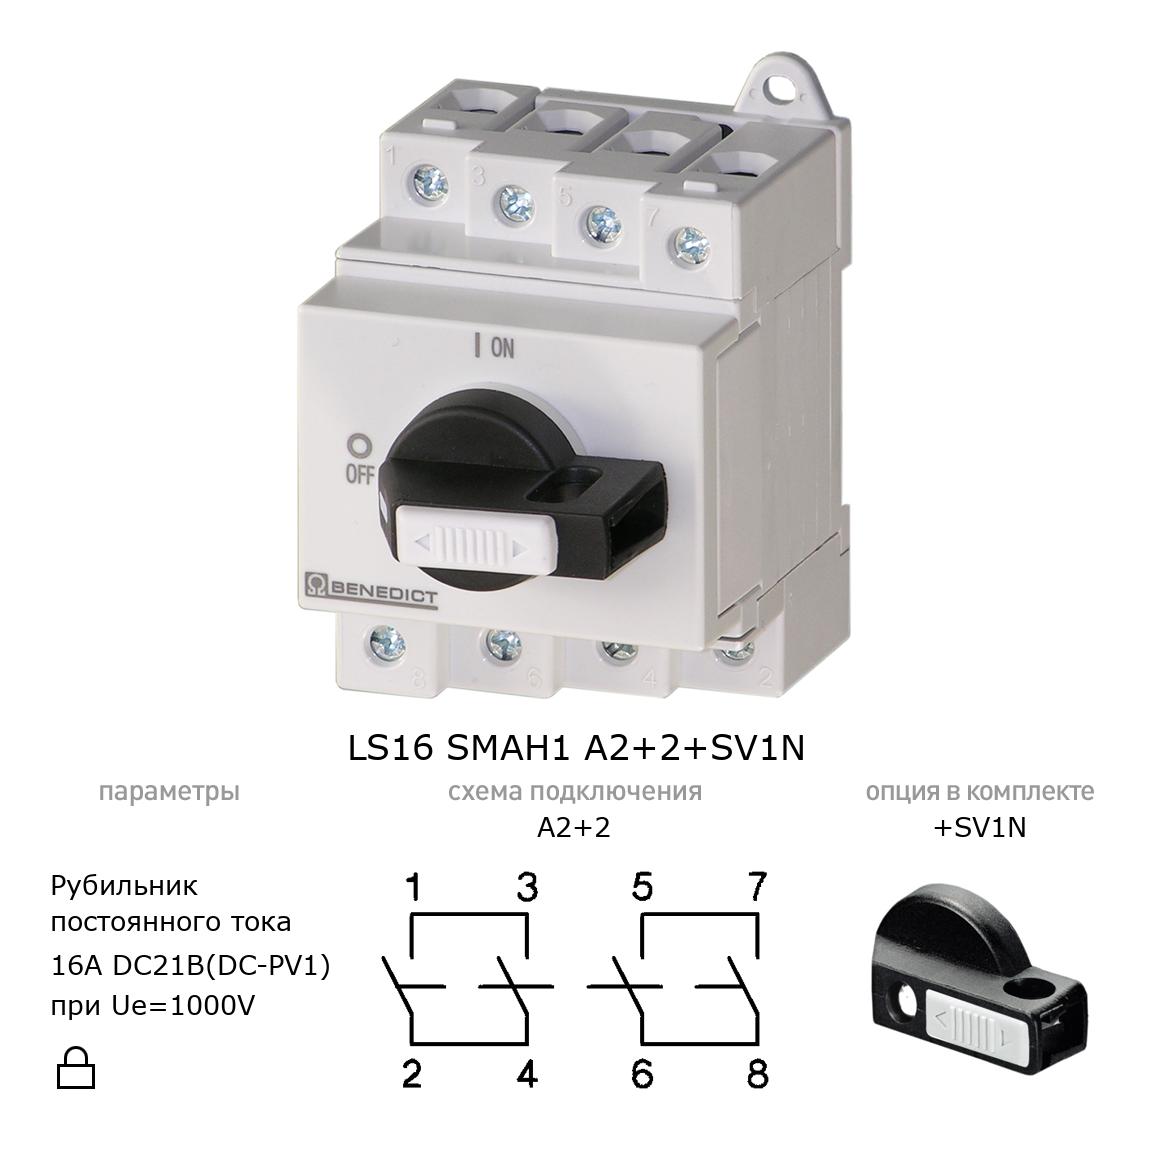 Выключатель нагрузки / рубильник для постоянного тока (DC) LS16 SMAH1 A2+2+SV1N BENEDICT